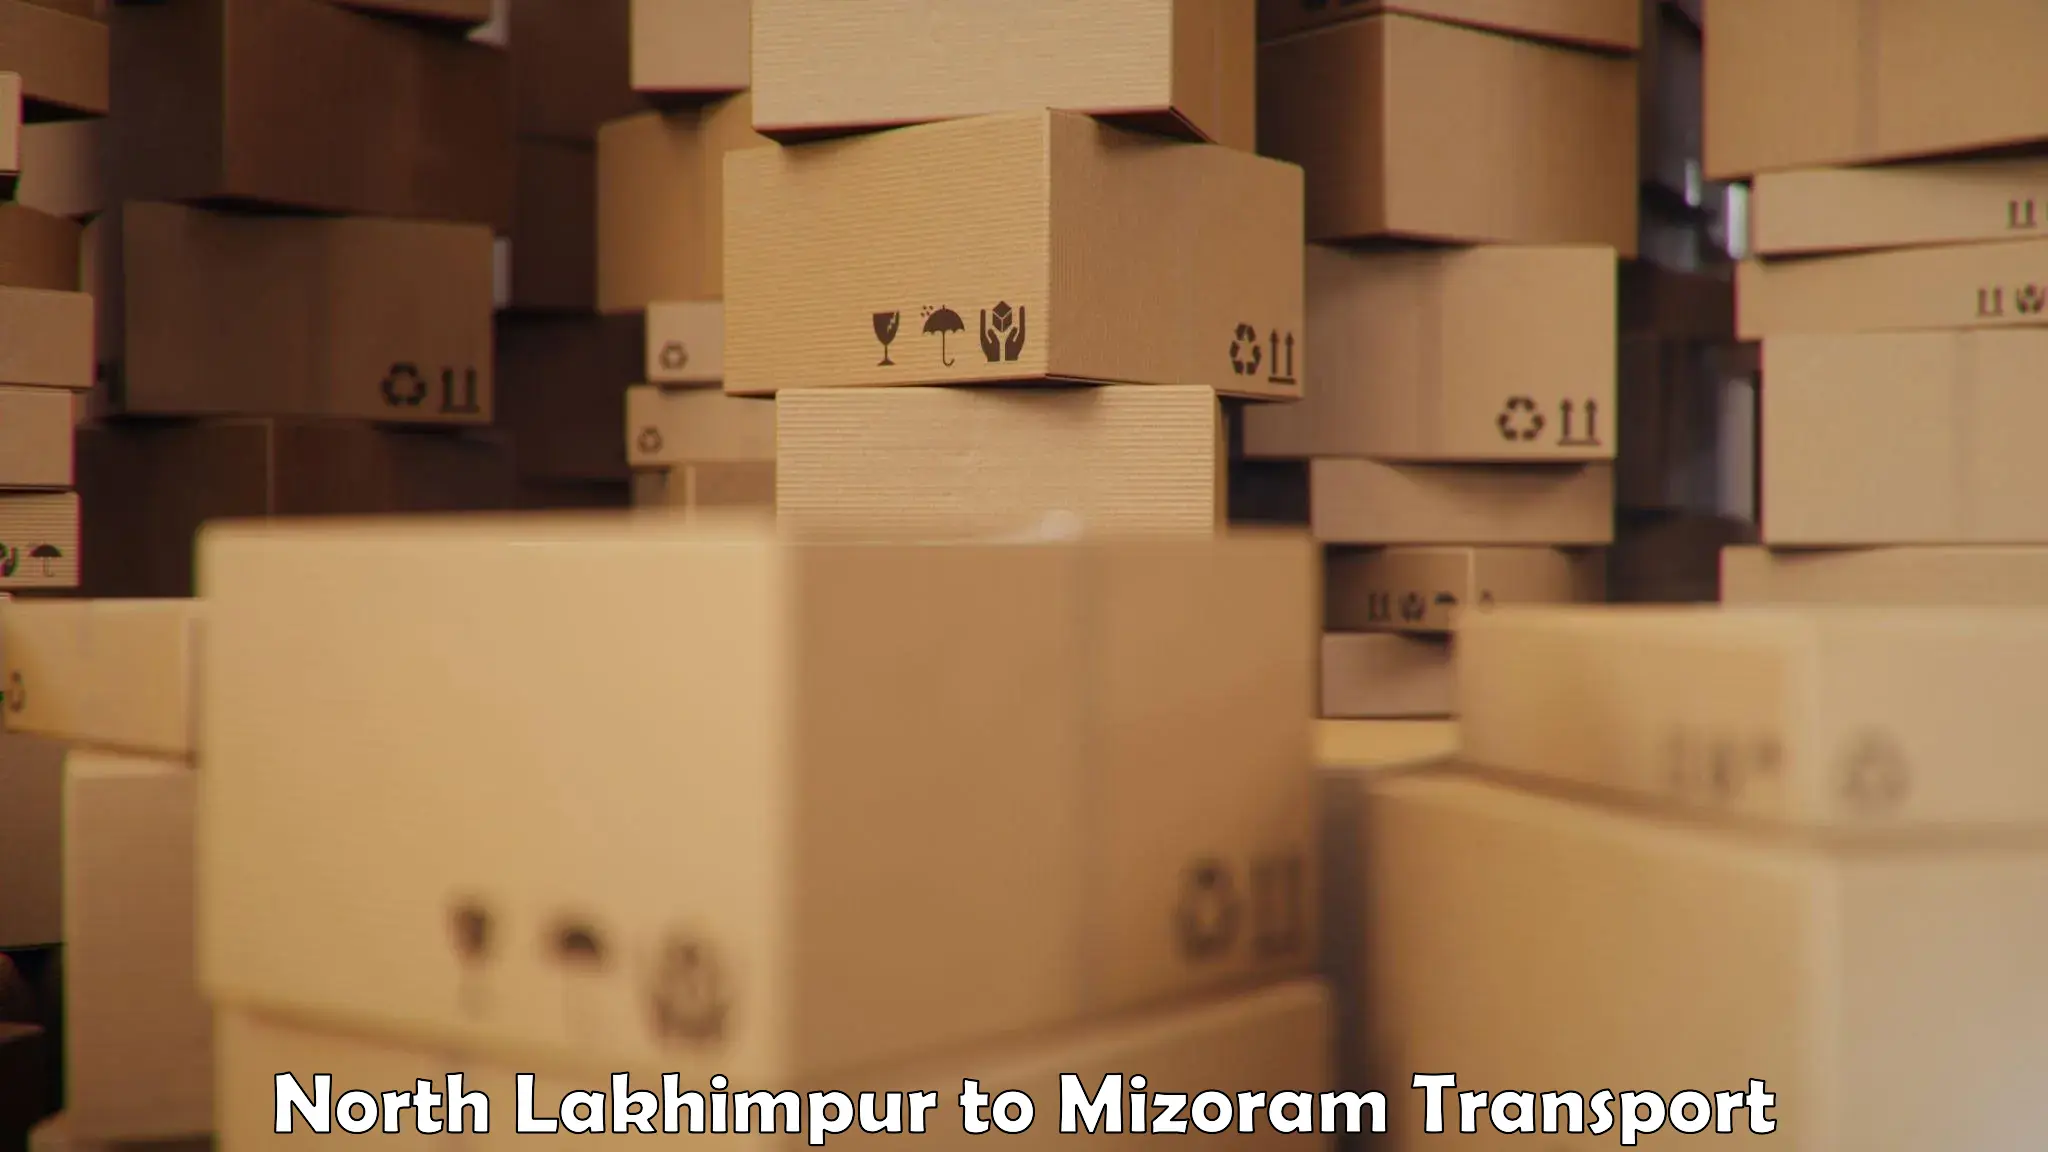 Cargo transport services in North Lakhimpur to Kolasib